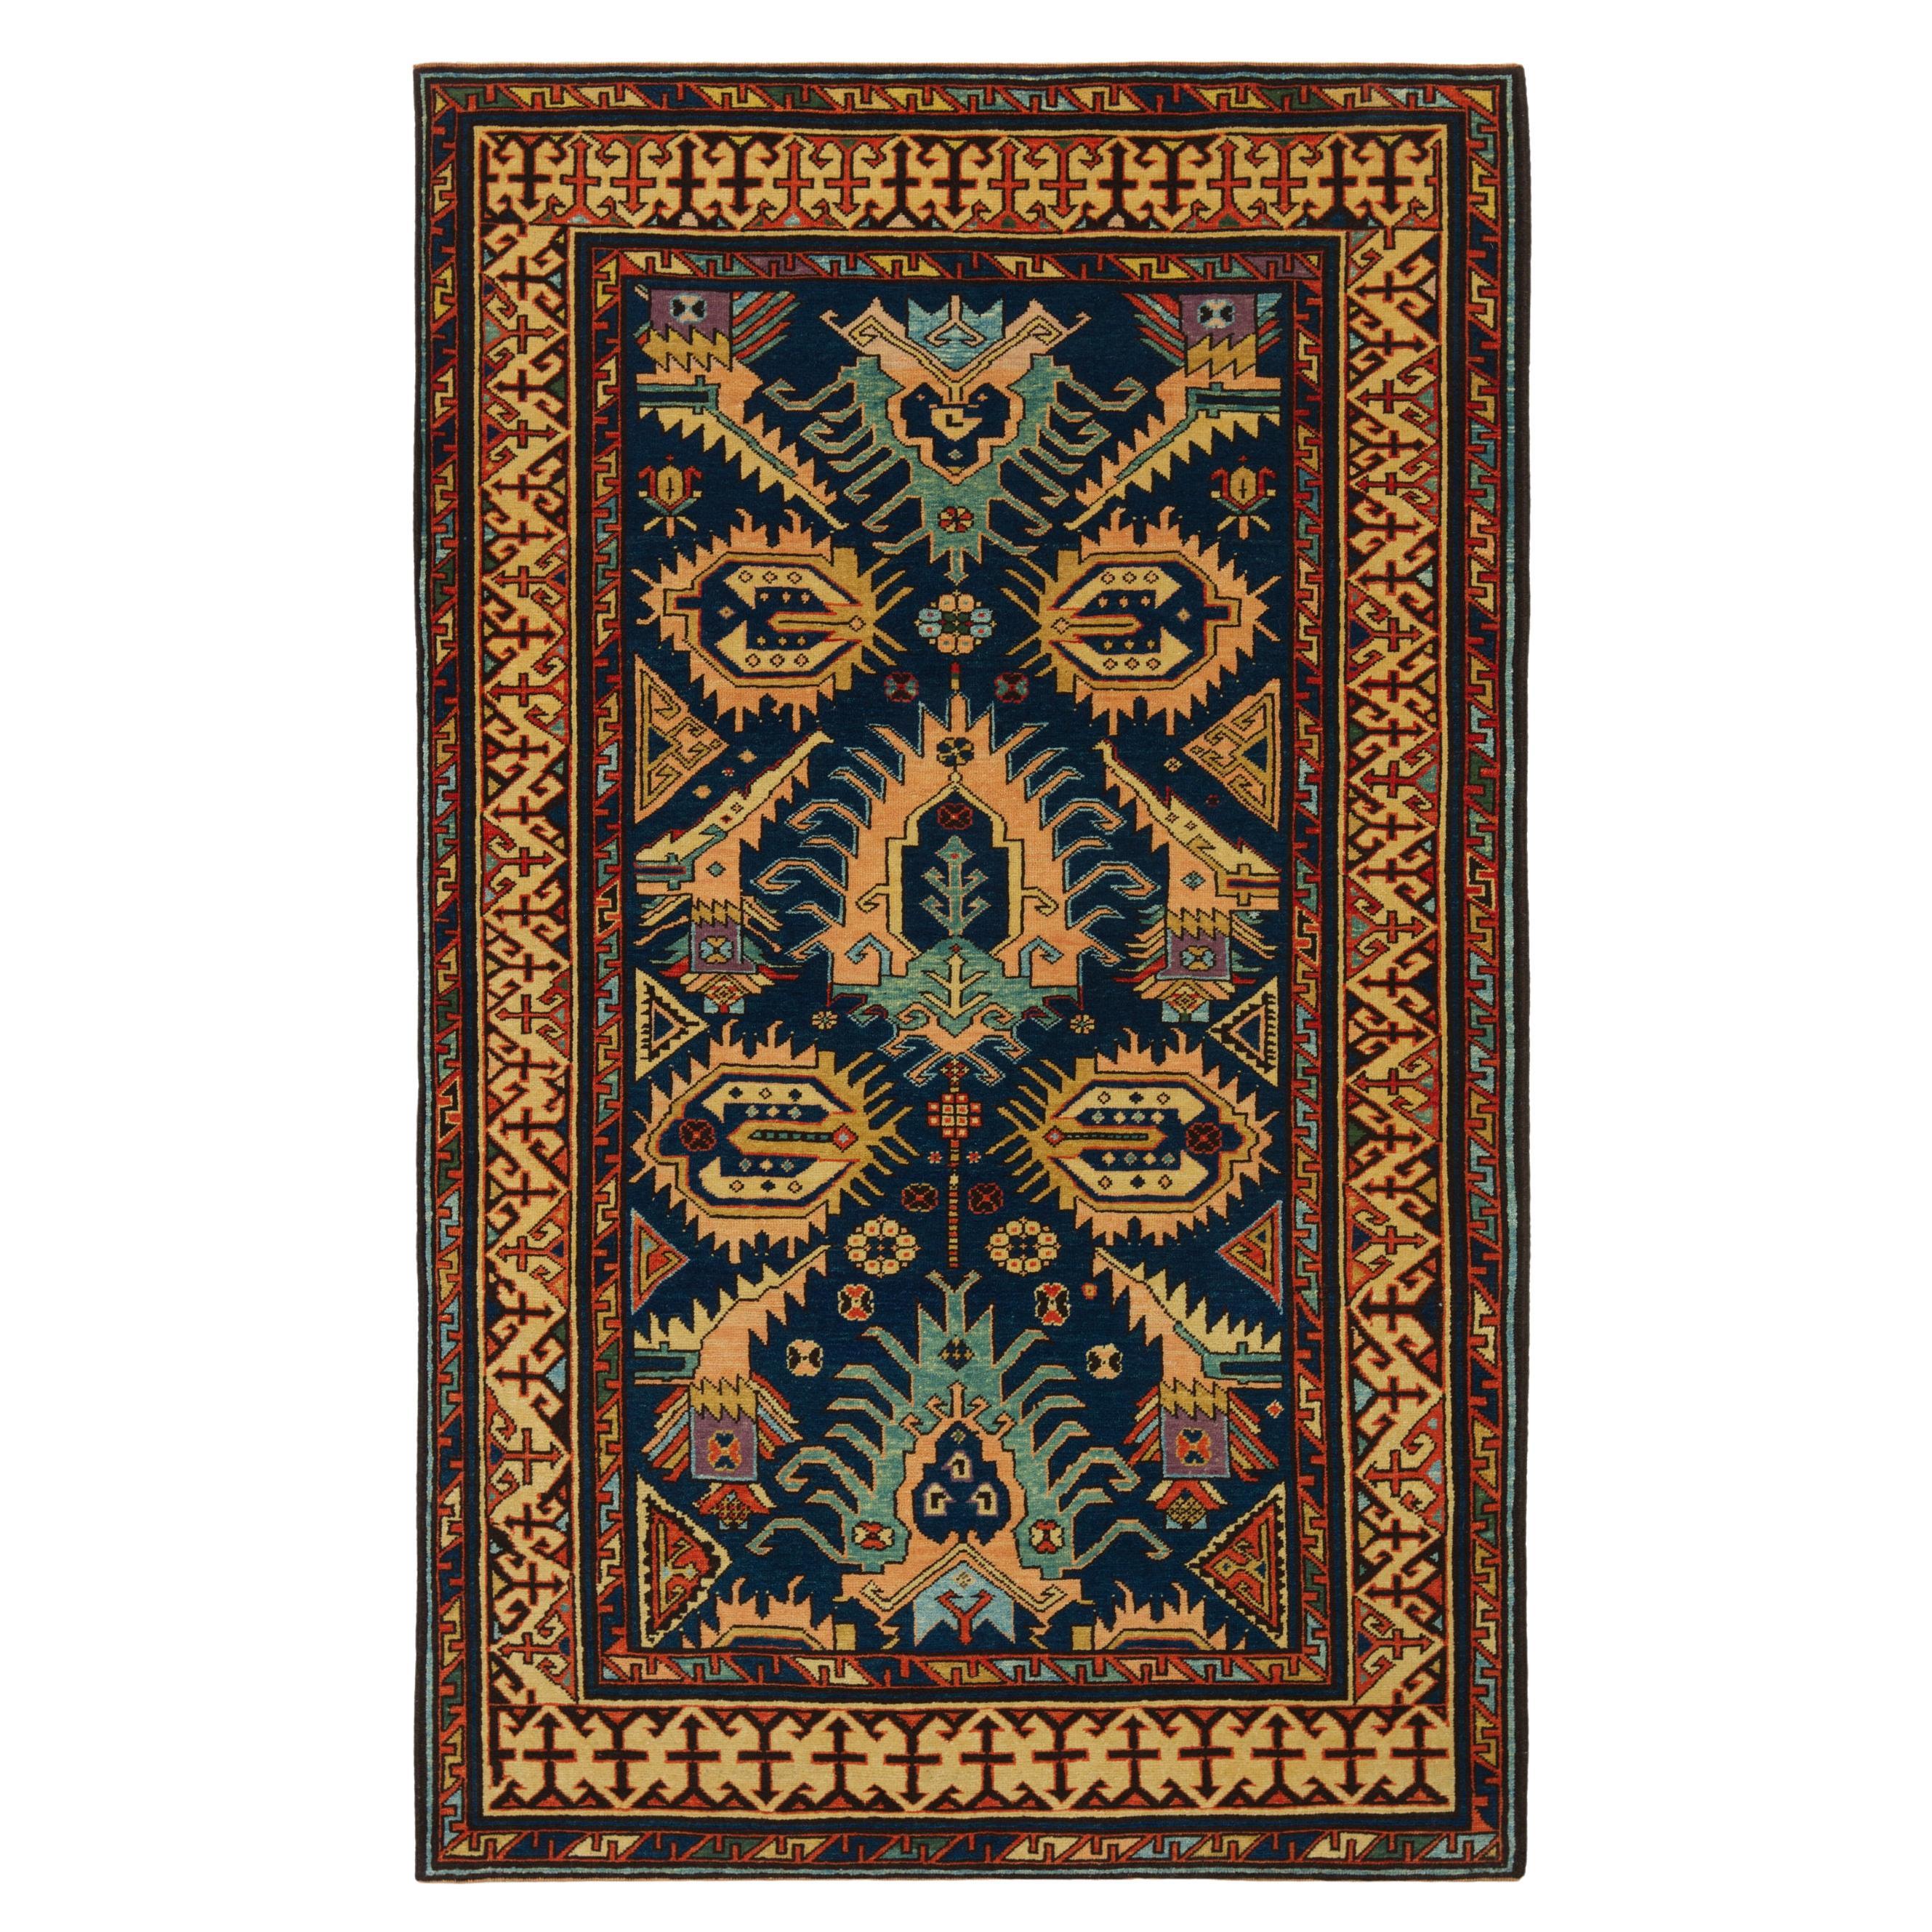 Ararat Rugs Bidjov Kazak Rug Caucasian Antique Revival Carpet Natural Dye For Sale